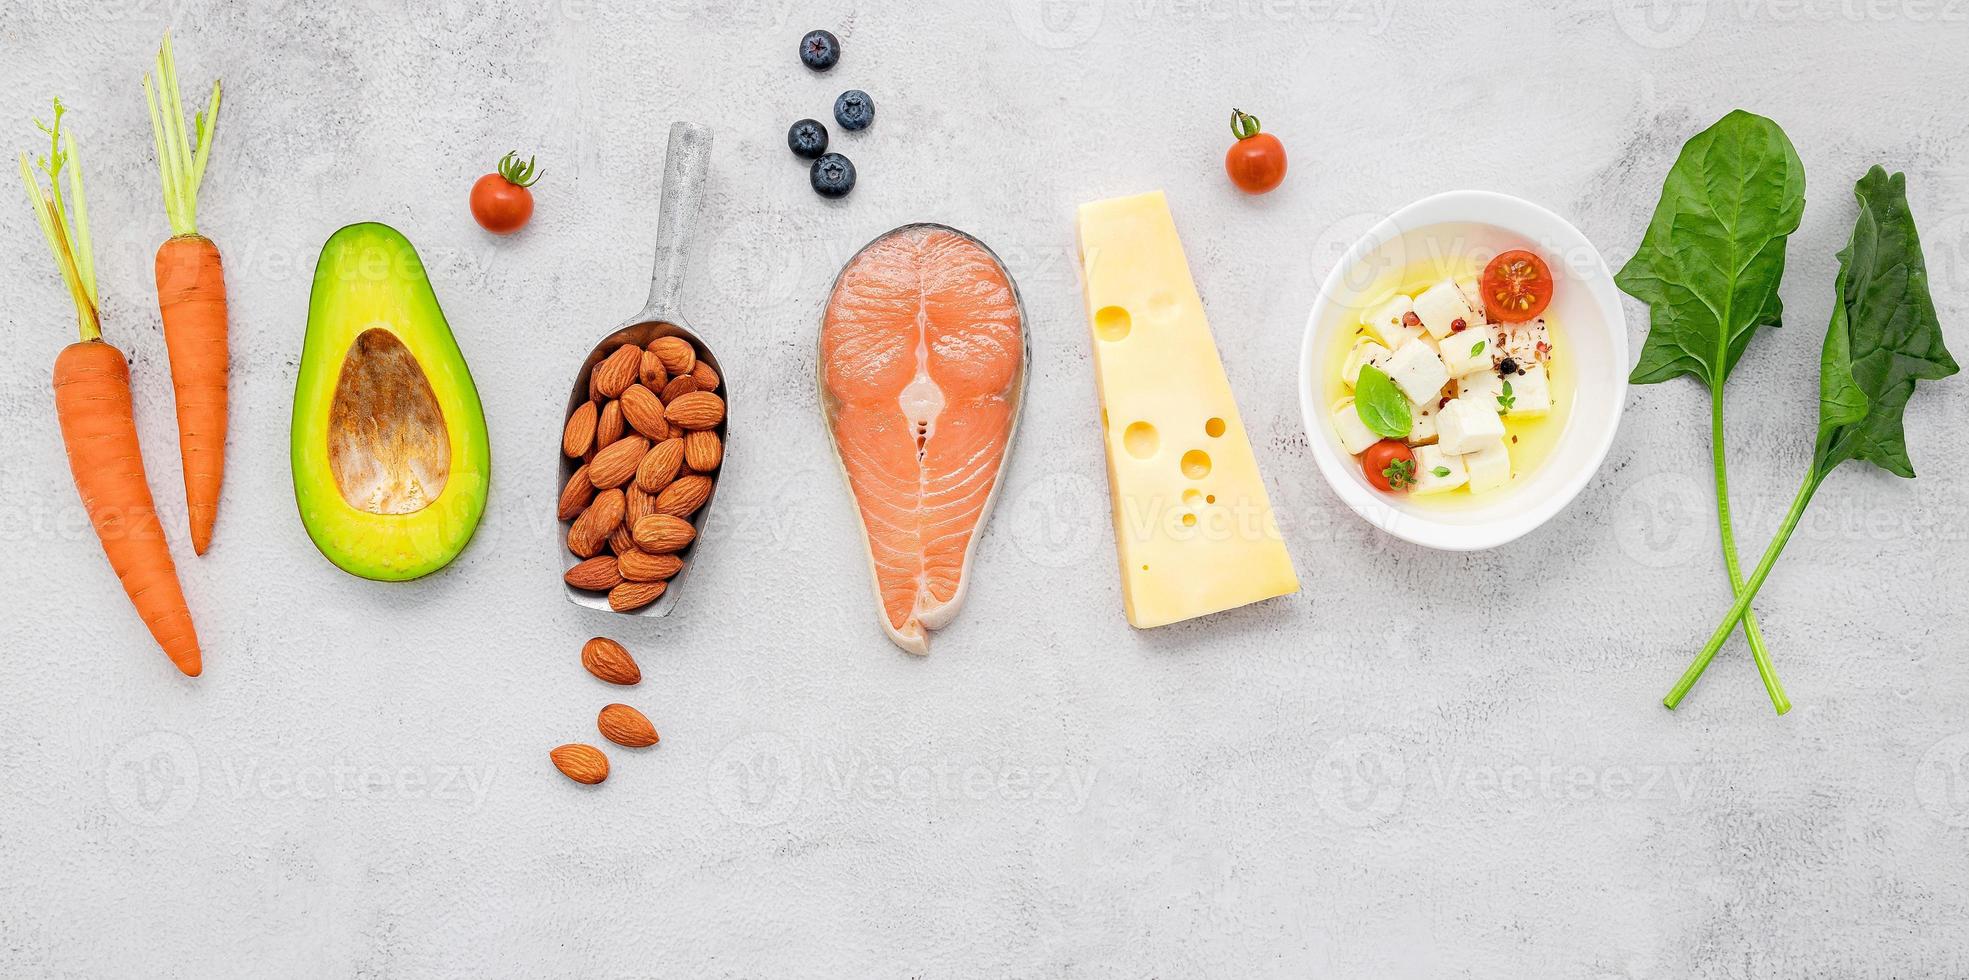 ketogeen koolhydraatarm dieetconcept. ingrediënten voor gezonde voeding selectie opgezet op witte betonnen achtergrond. foto